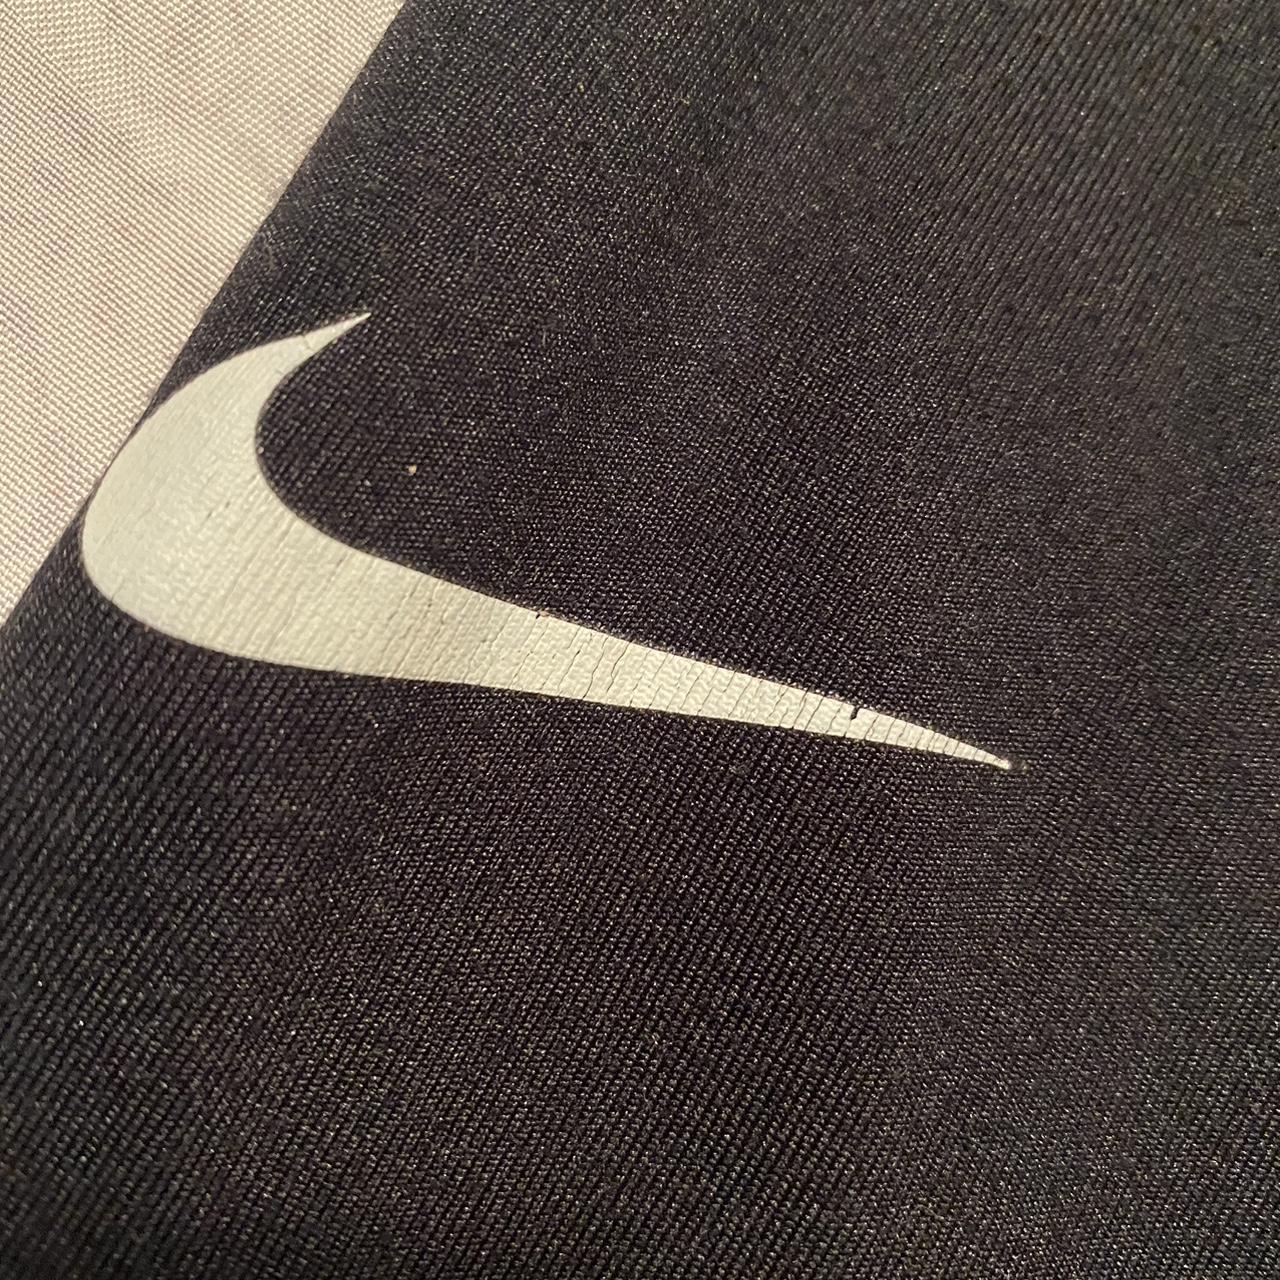 Nike Pros Black Leggings - Depop